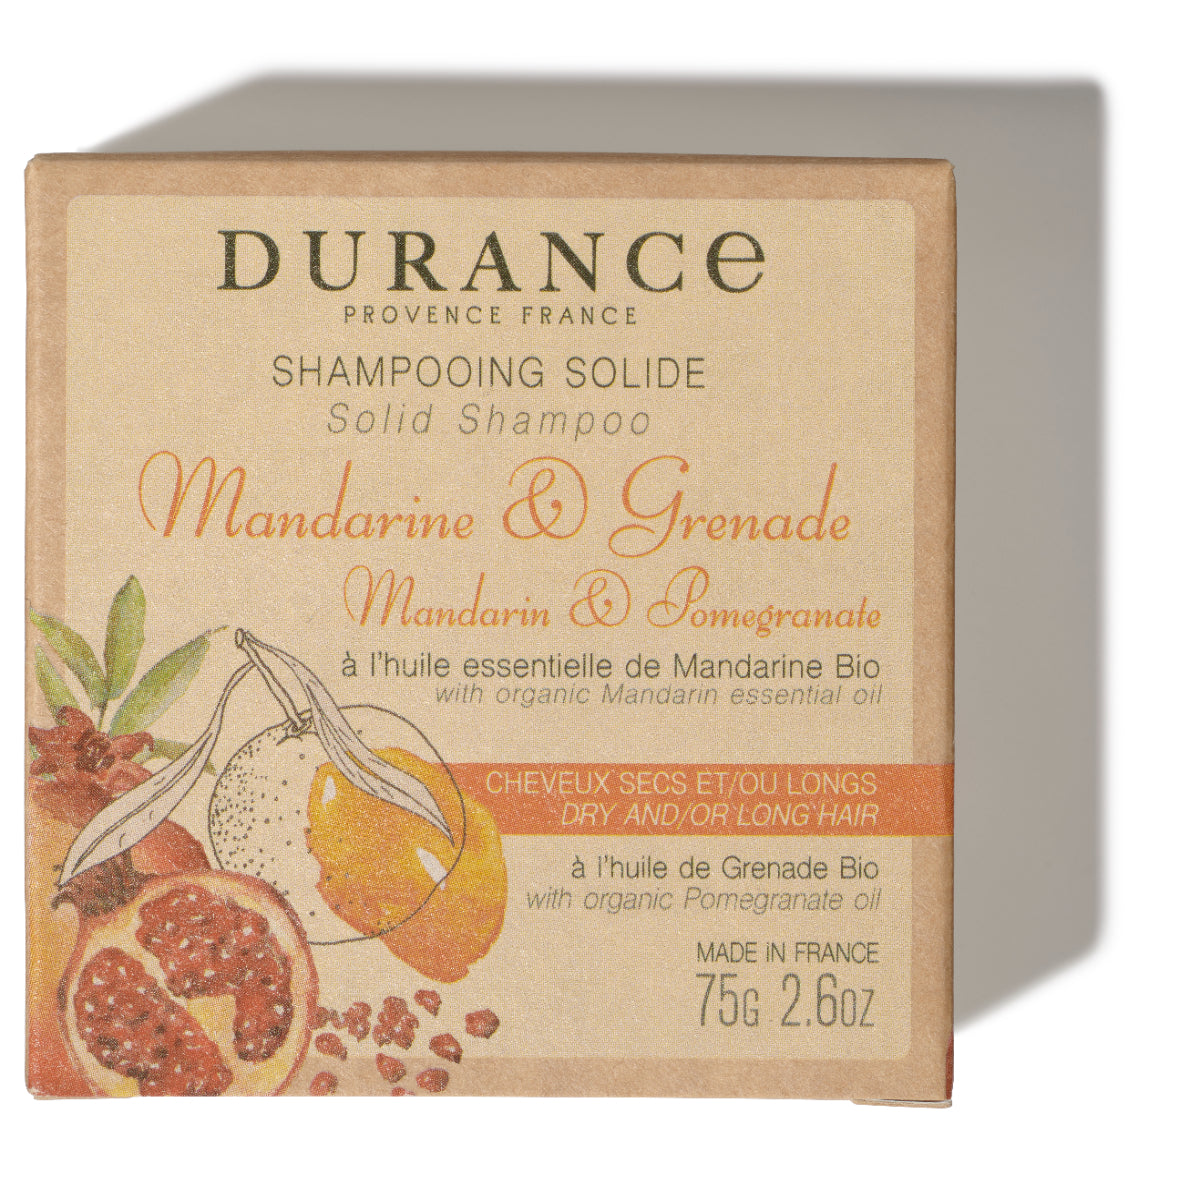 viereckiges festes shampoo in papier verpackung mit mandarine und granatapfel aufschrift.